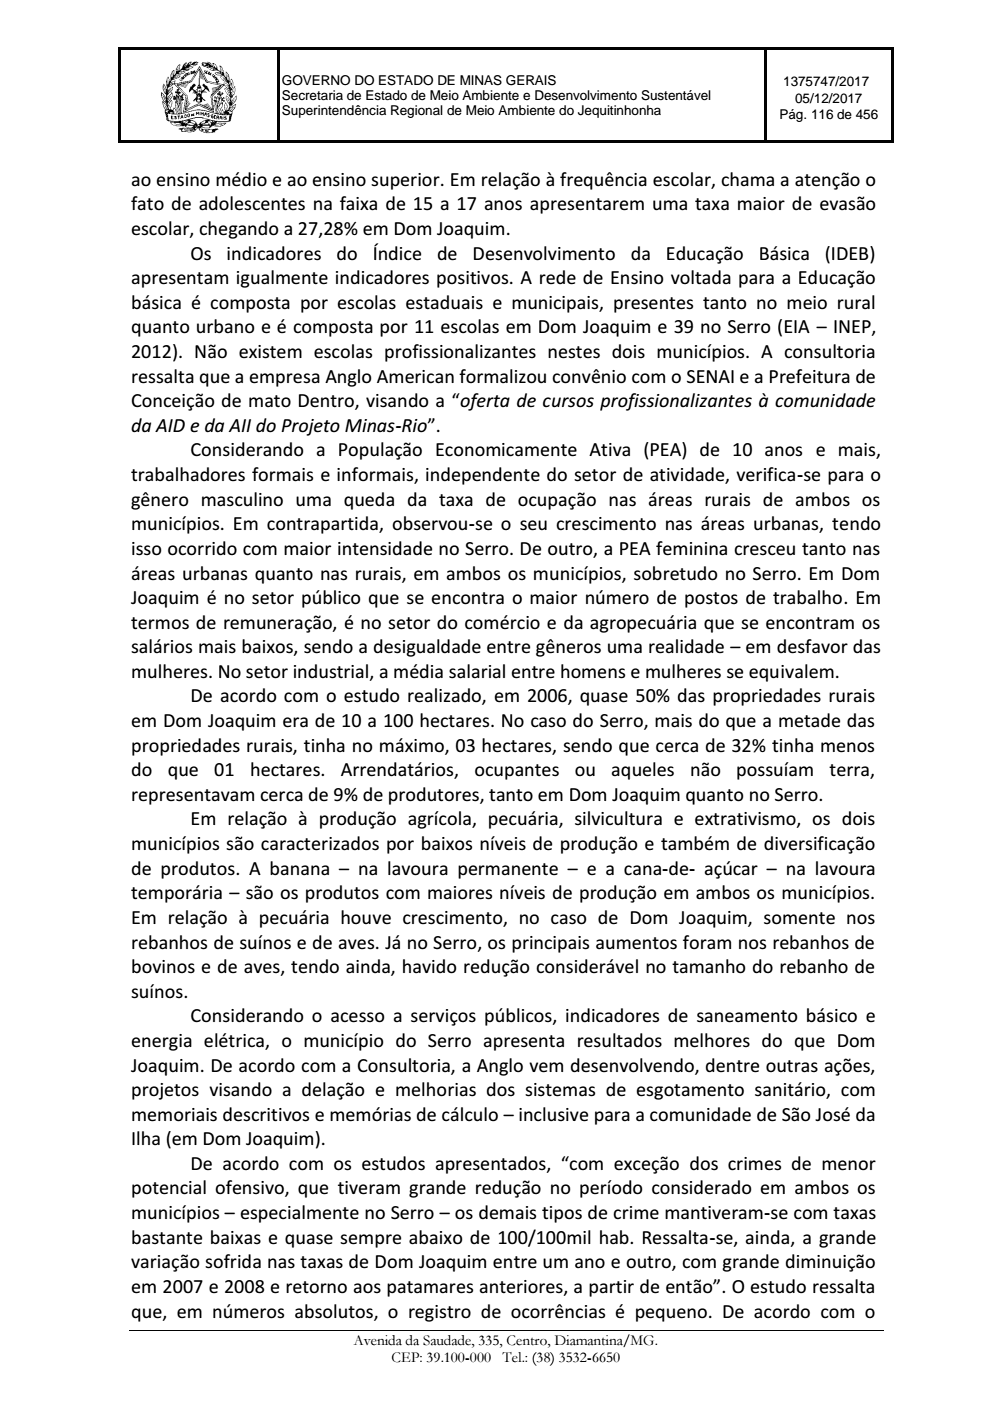 Page 116 from Parecer único da Secretaria de estado de Meio Ambiente e Desenvolvimento Sustentável (SEMAD)